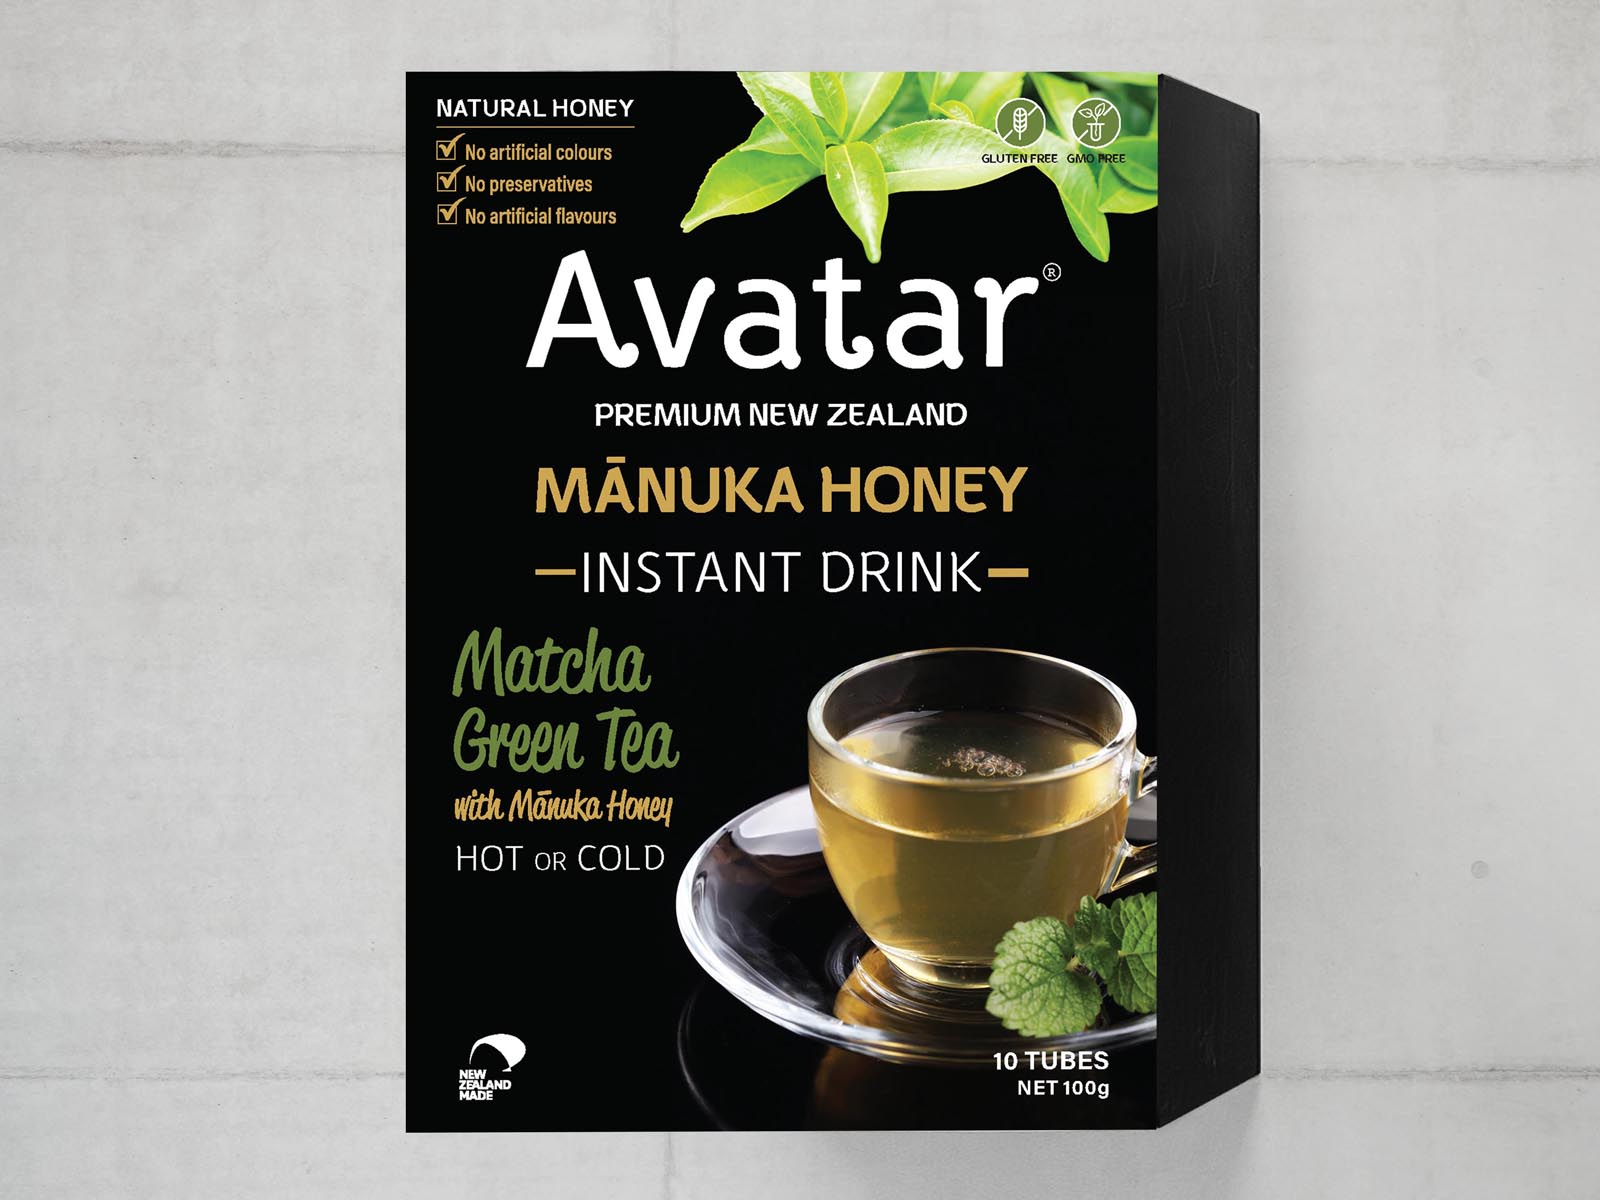 Avatar Manuka Honey Green Tea